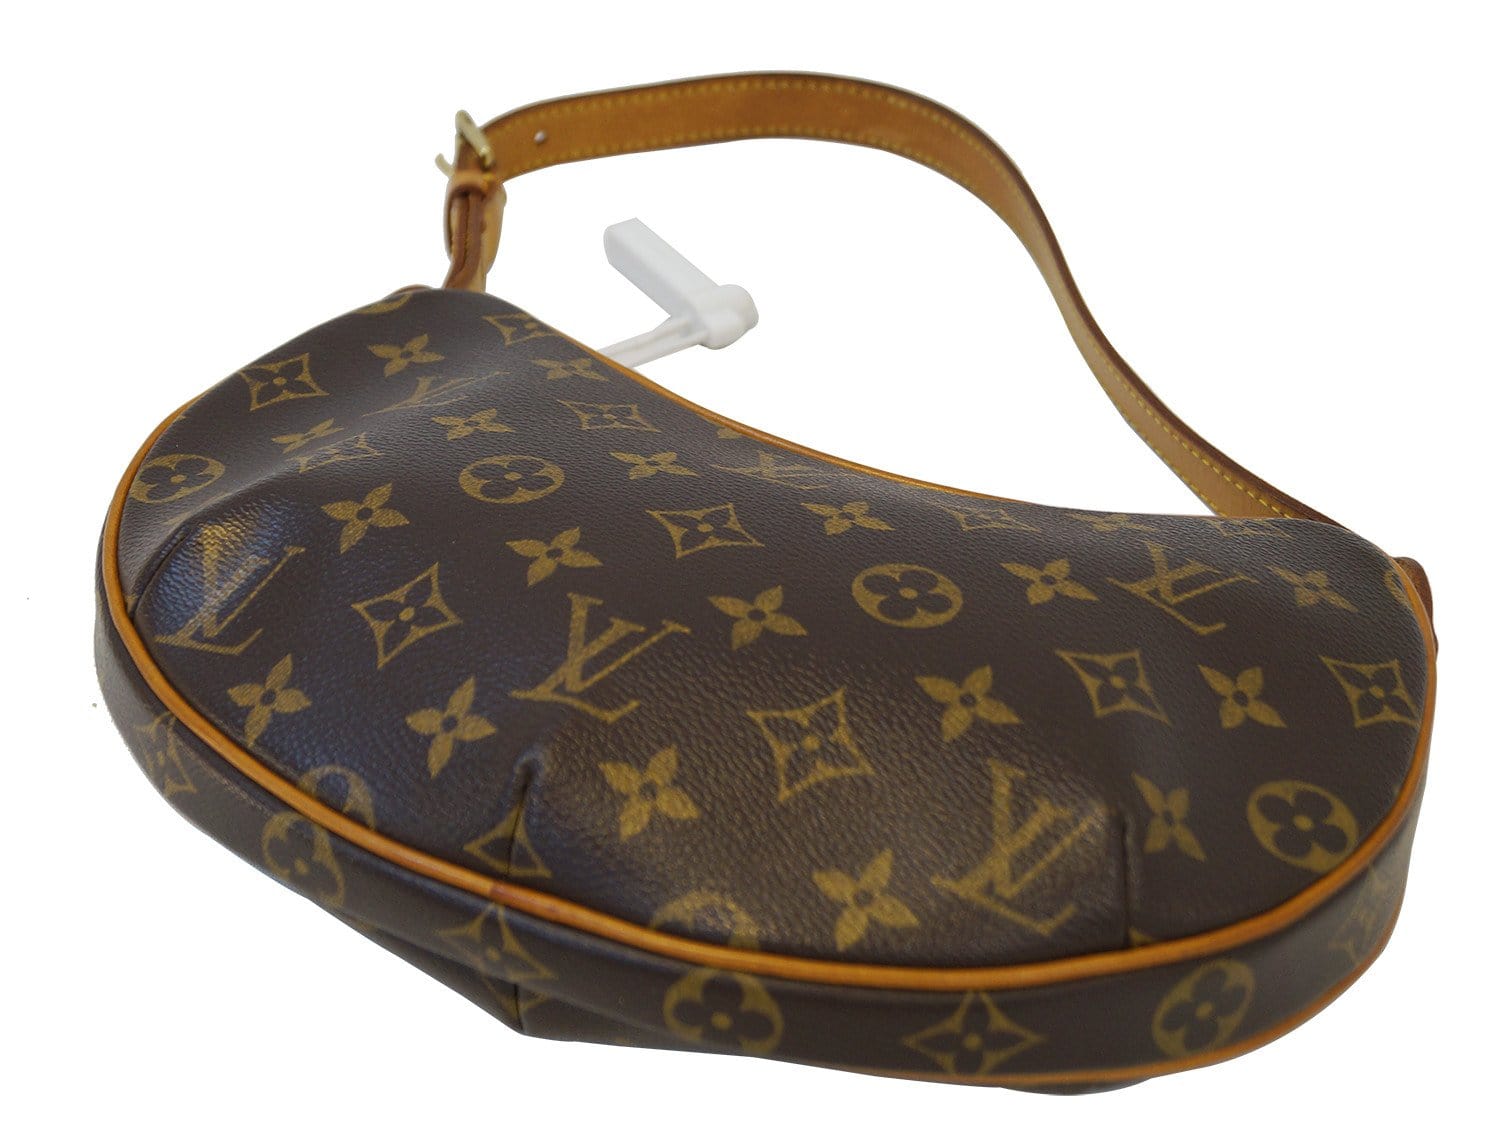 Louis Vuitton Monogram Croissant PM Vintage Shoulder Bag – The